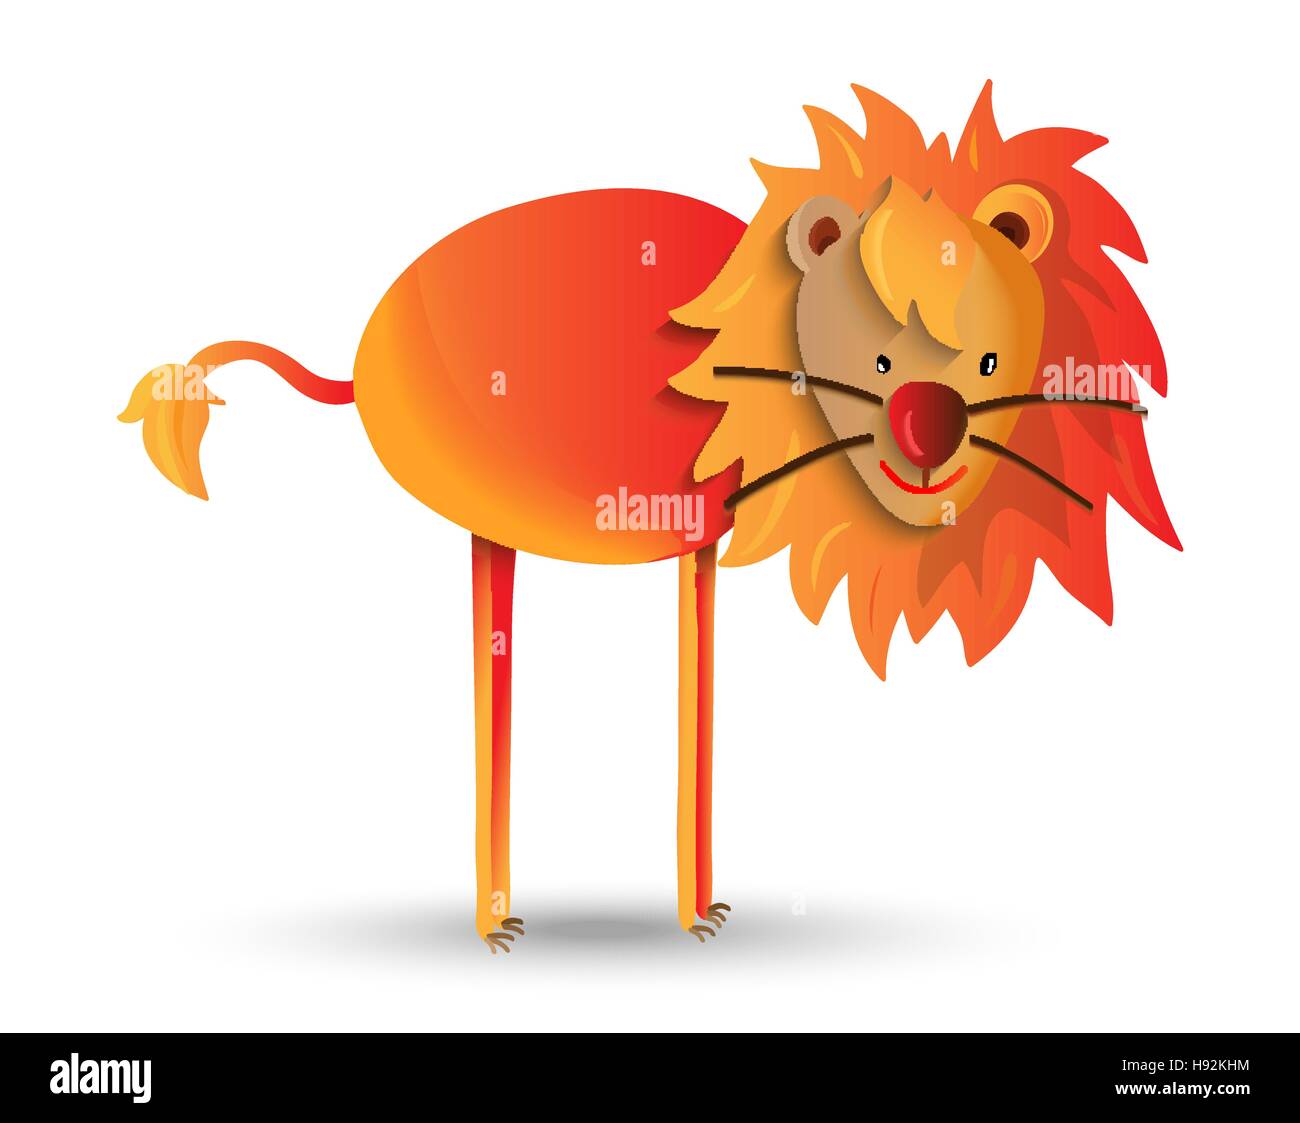 Niedlichen wild Animal Cartoon Illustration, glücklich Dschungel Löwe mit Mähne. Ideal für Kinder oder Bildung Projekte. EPS10 Vektor. Stock Vektor